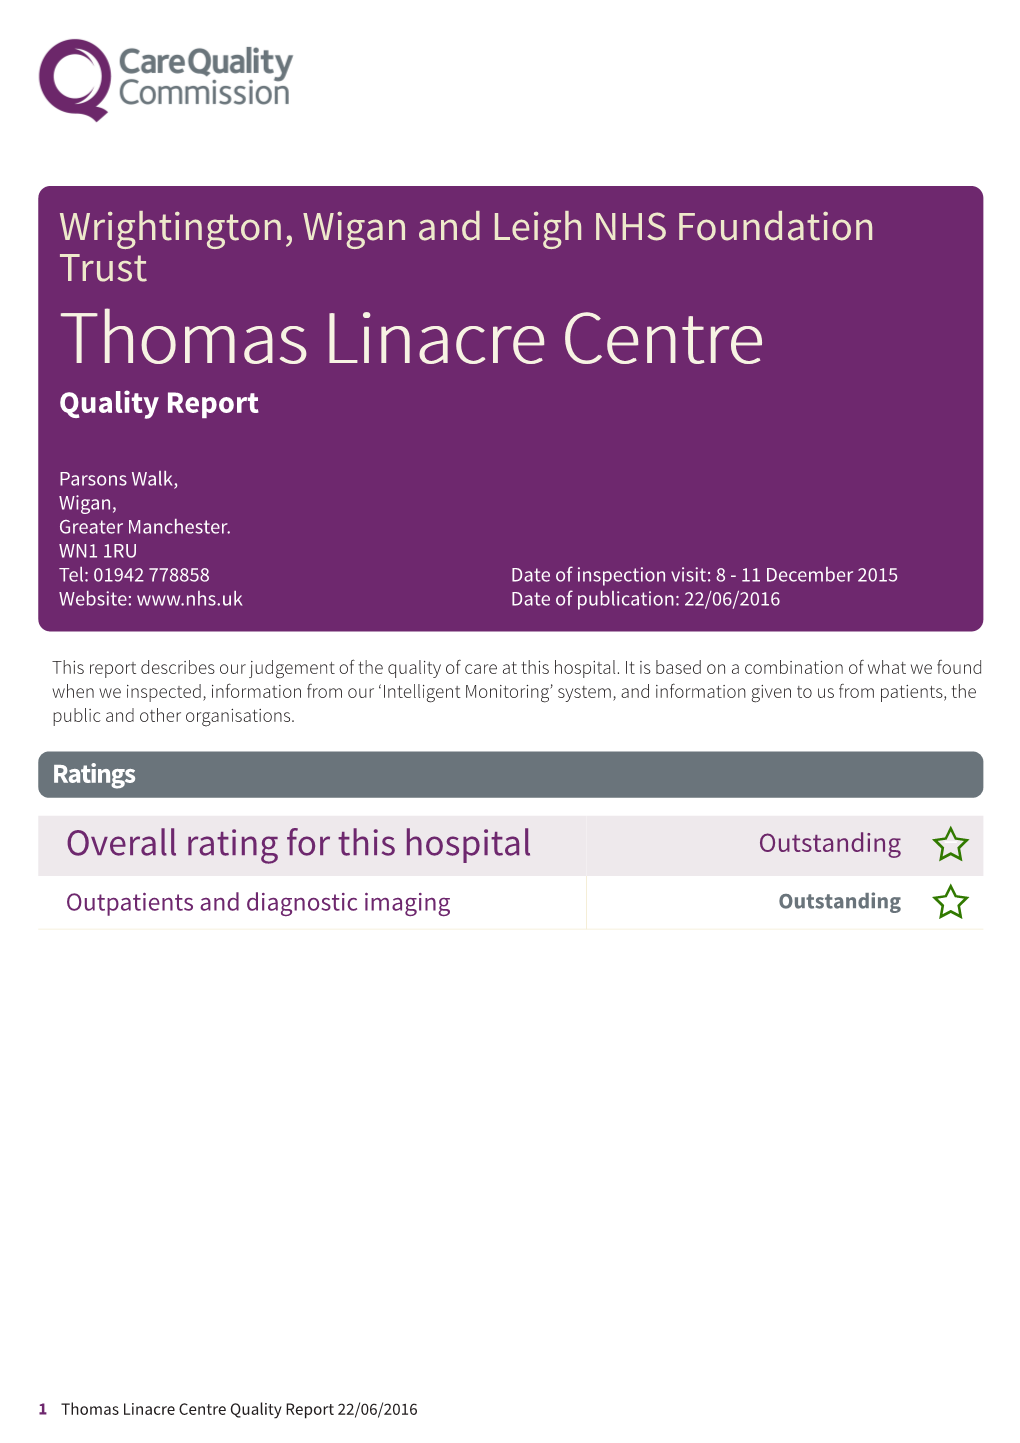 Thomas Linacre Centre Quality Report